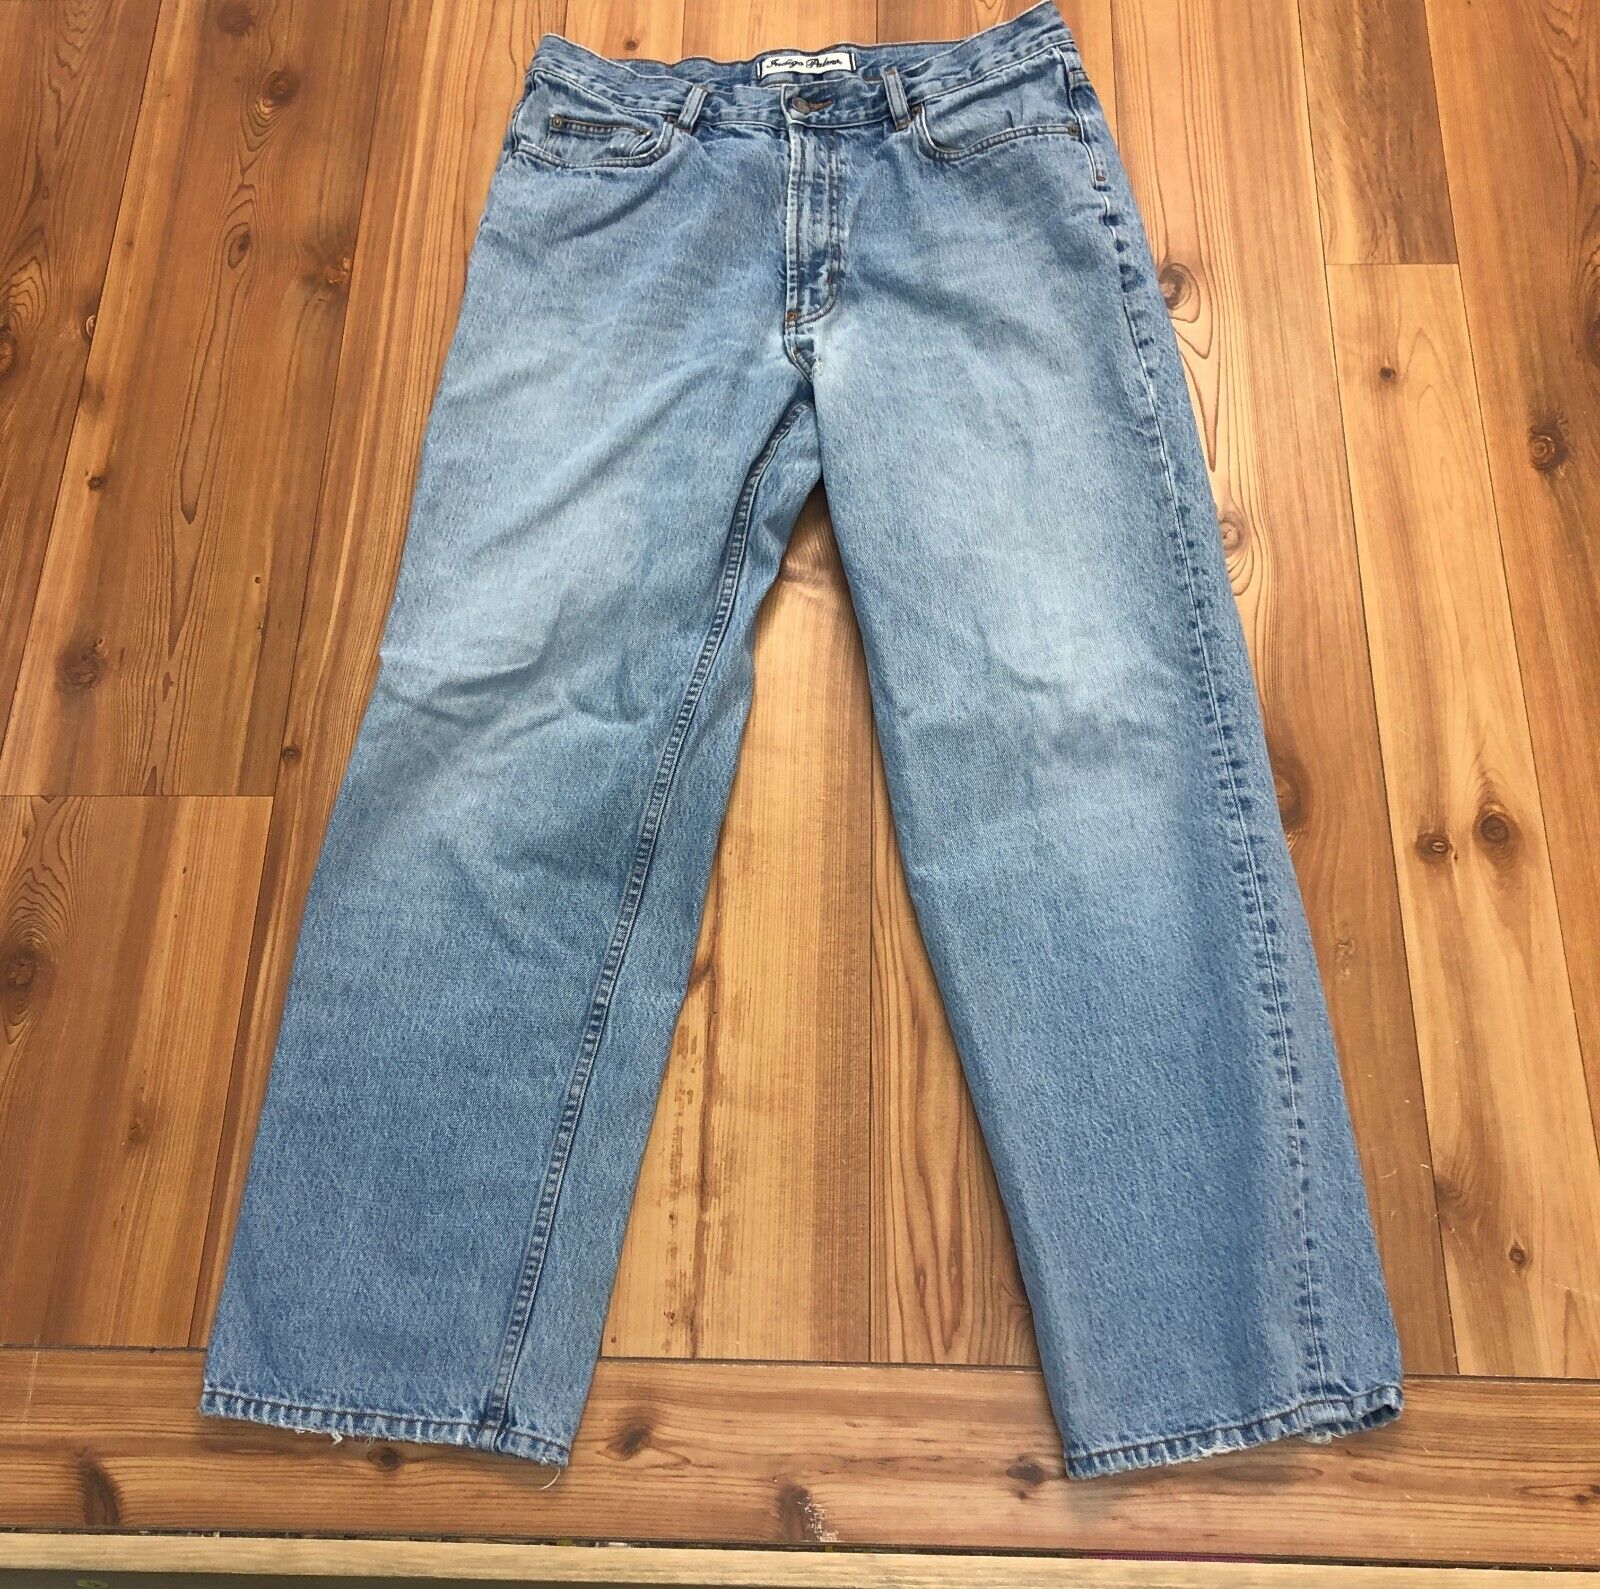 Vintage Indigo Palms Light Blue Denim Jeans Men Size Relax Fit Men Size 36x32